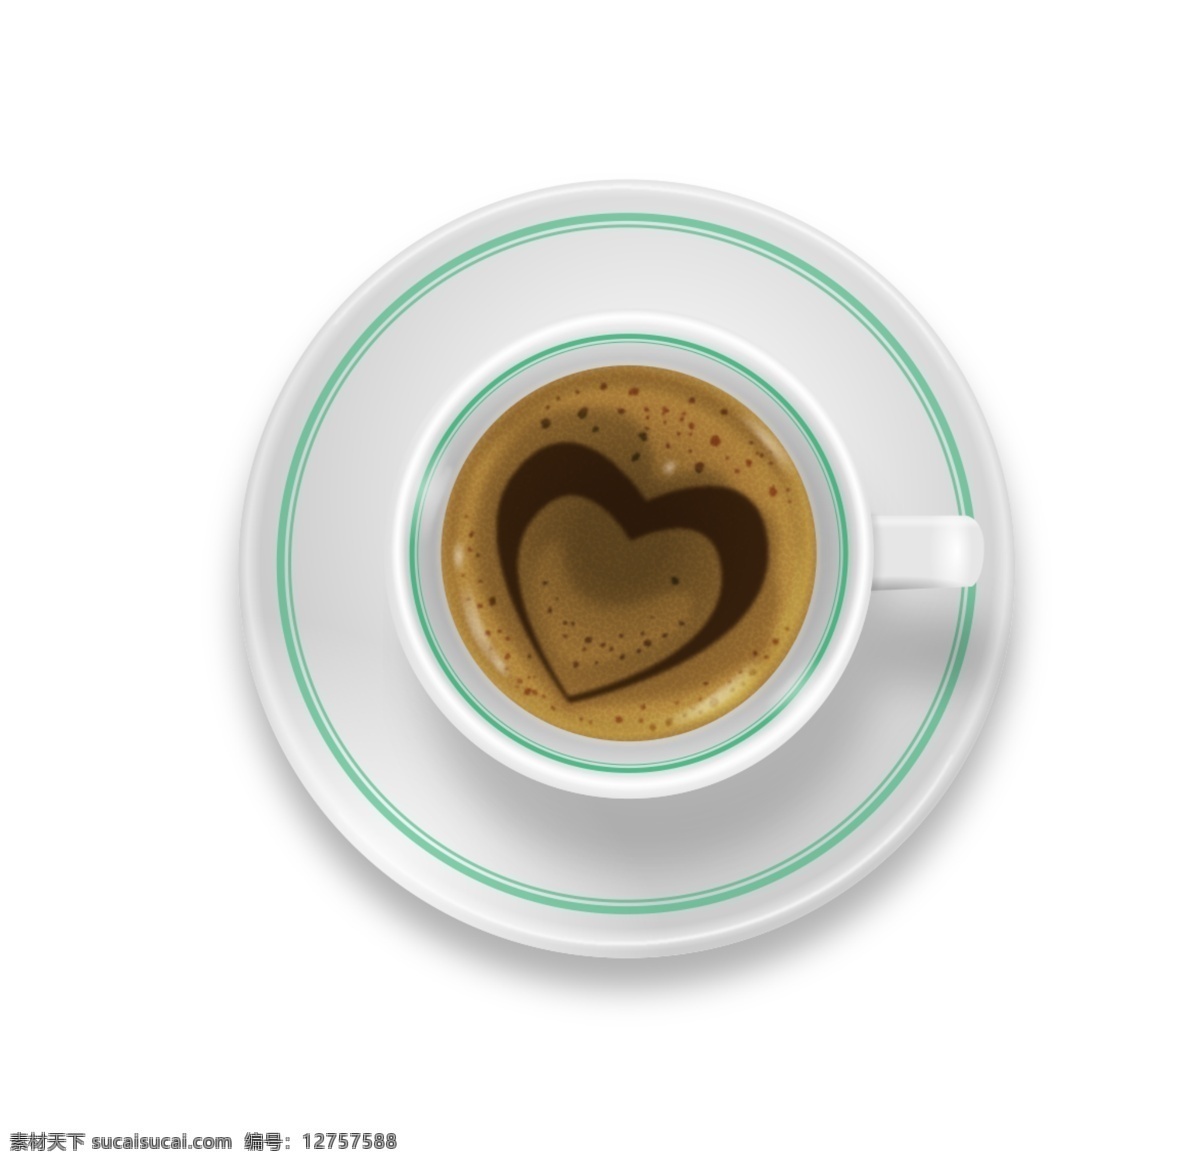 爱心咖啡设计 爱心咖啡 爱心咖啡杯 咖啡 咖啡杯 桌子上的咖啡 咖啡插画 coffee